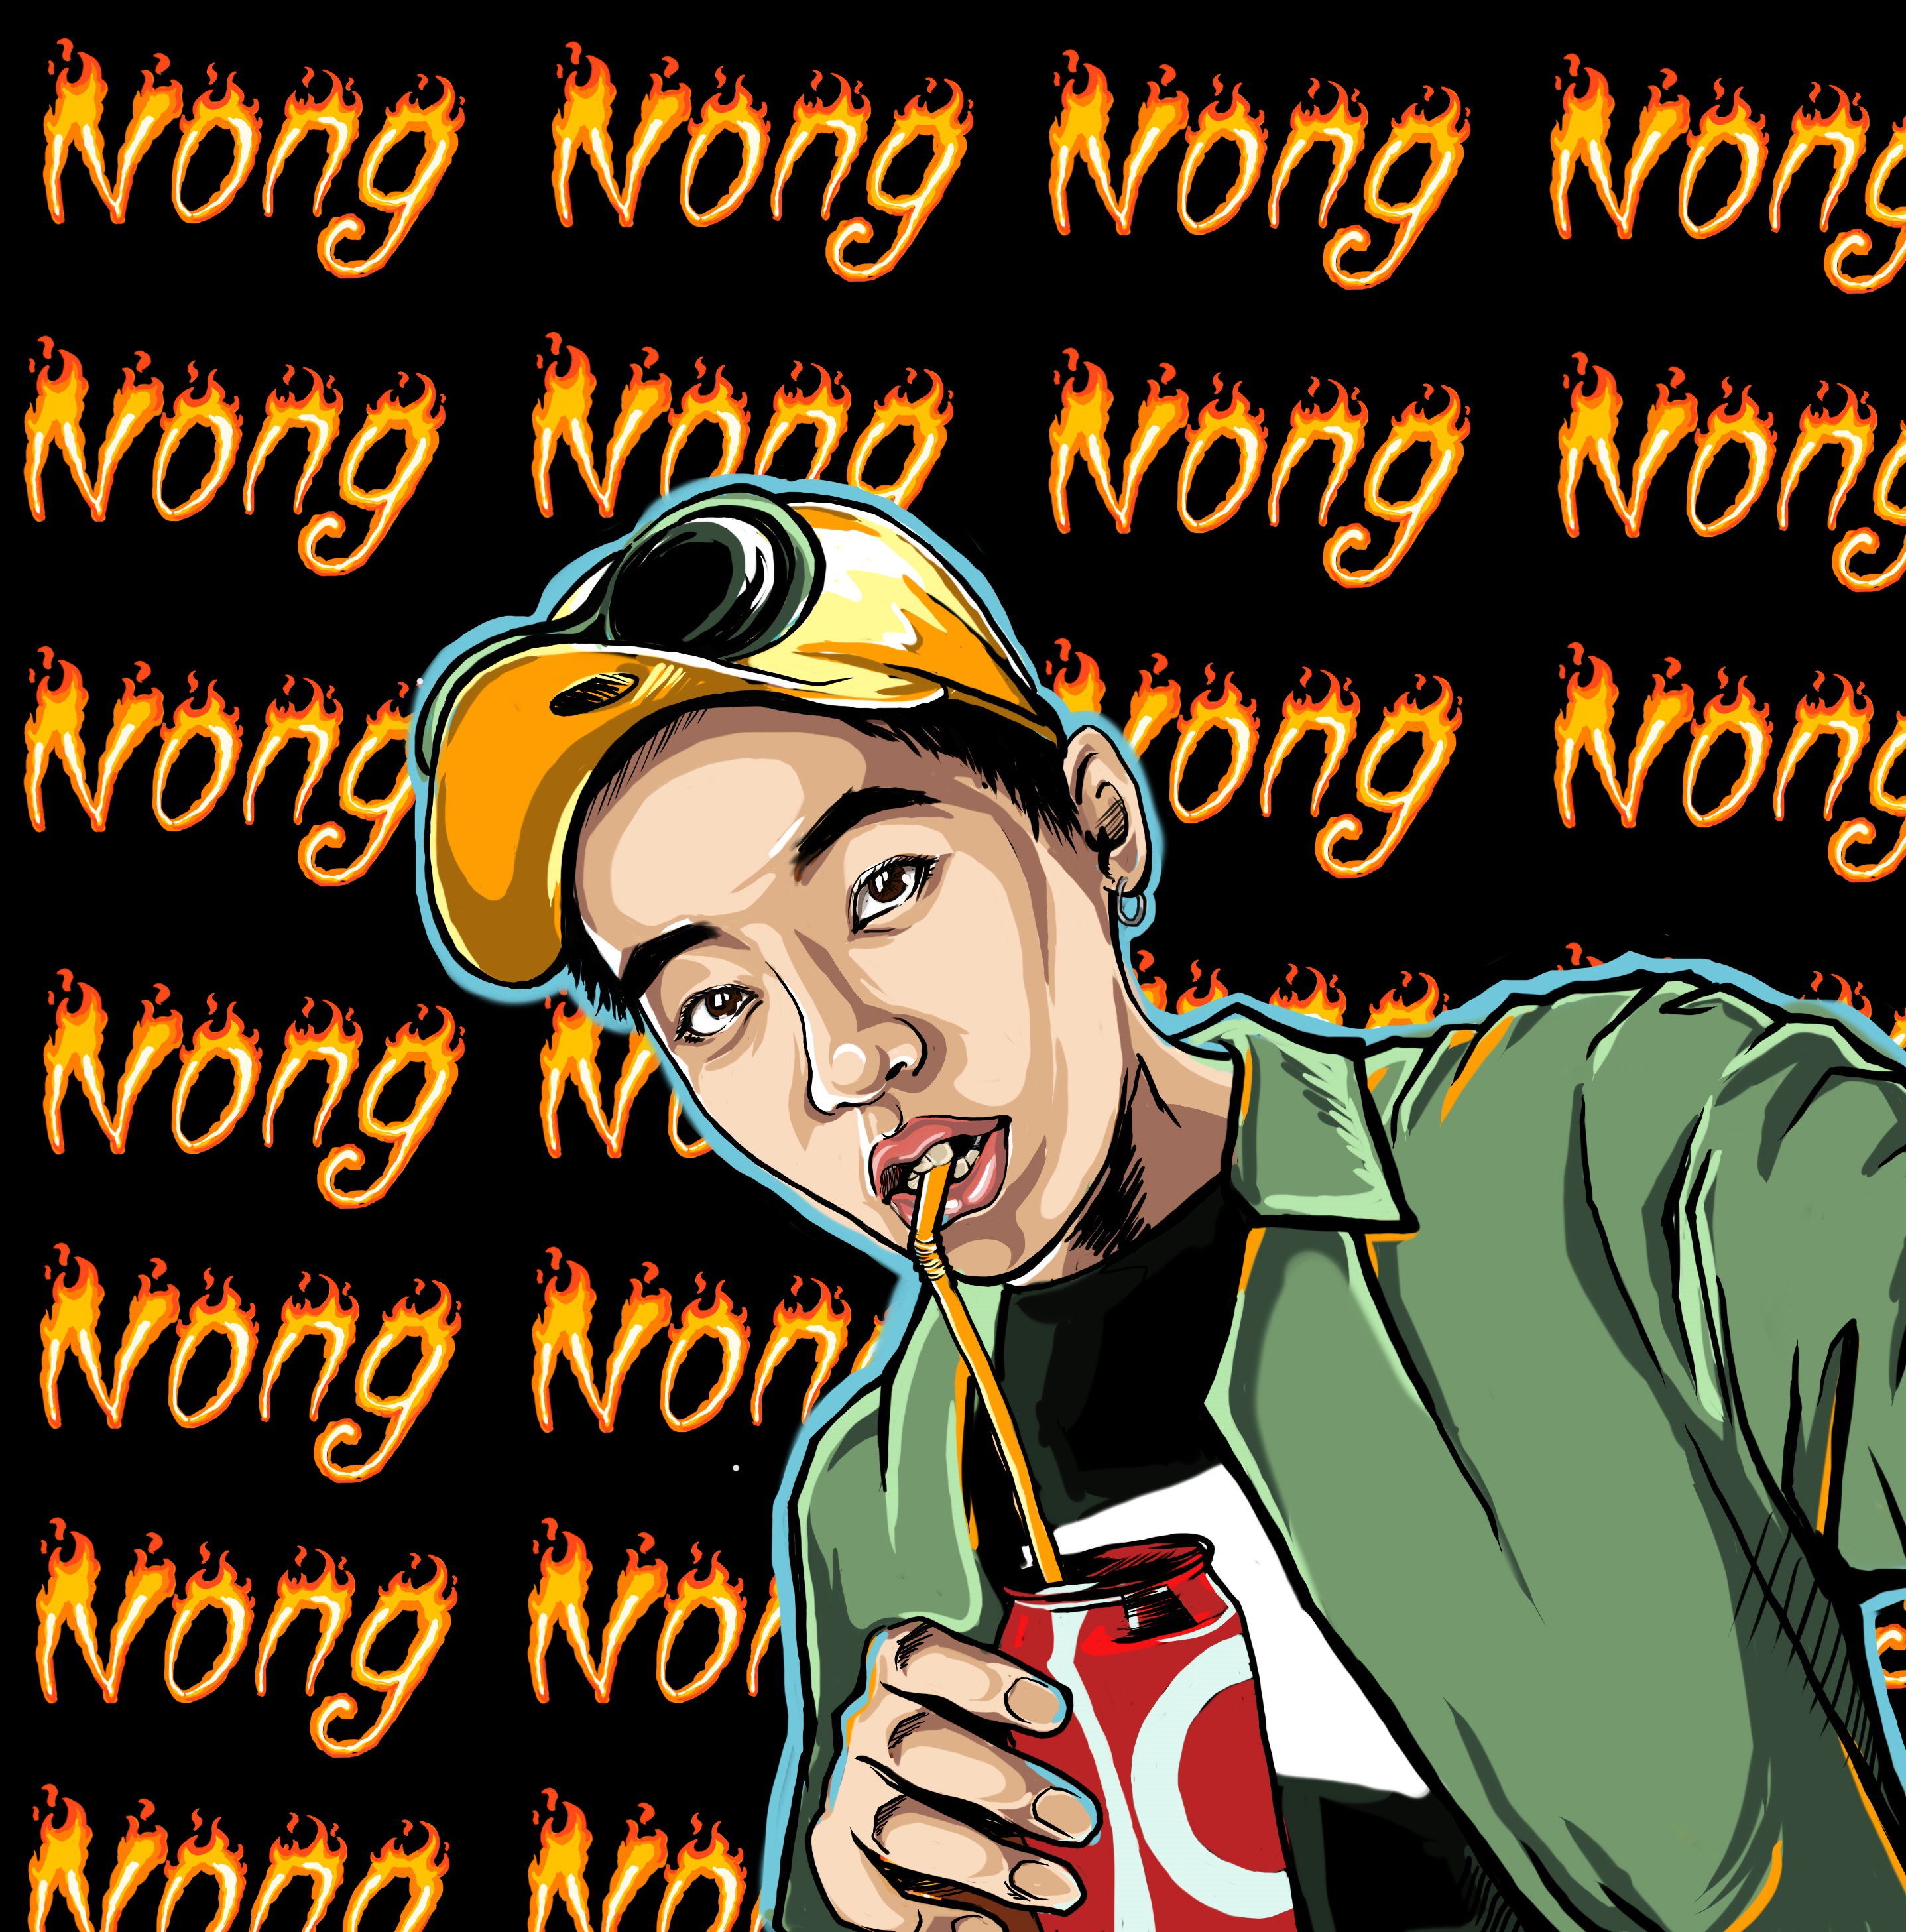 Nong Nong [ I Call It Love ] remix